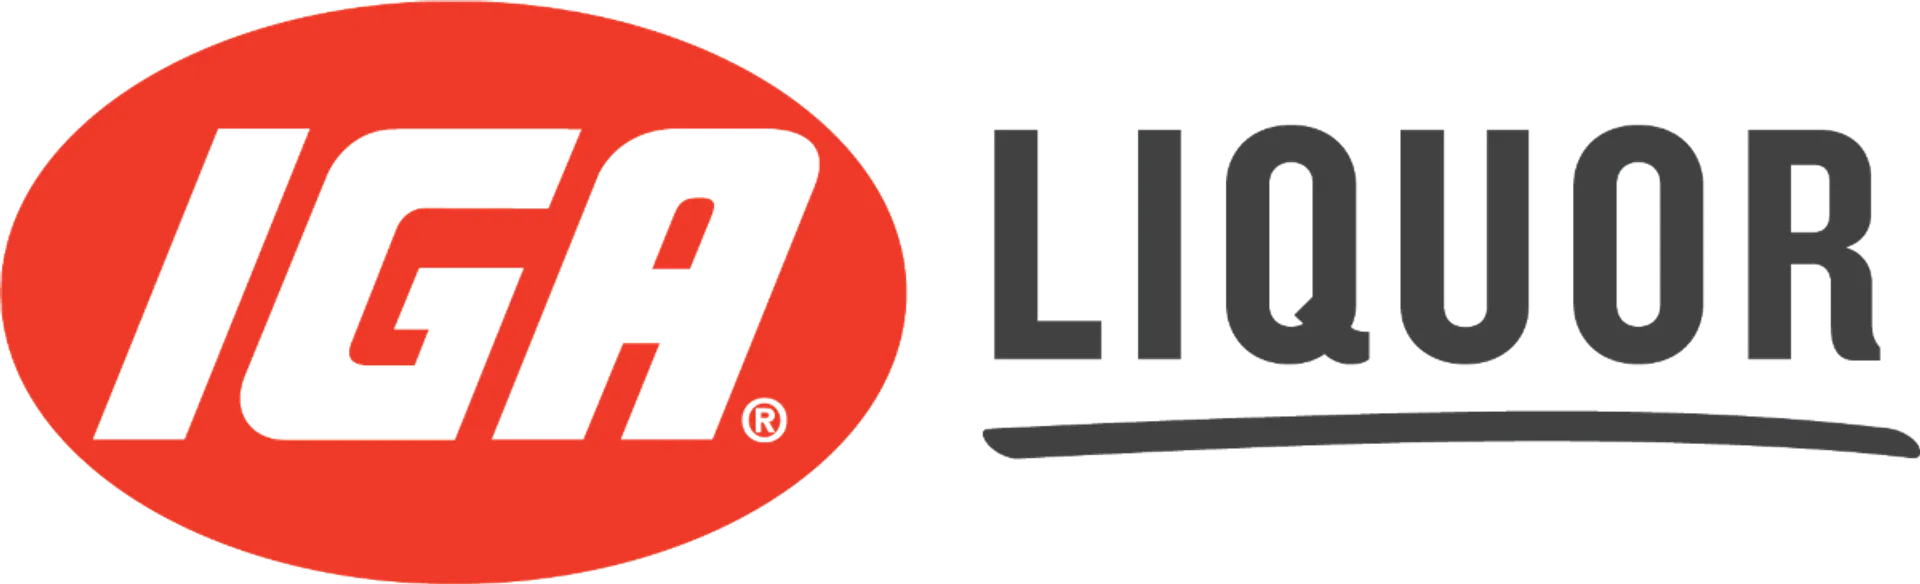 IGA LIQUOR logo